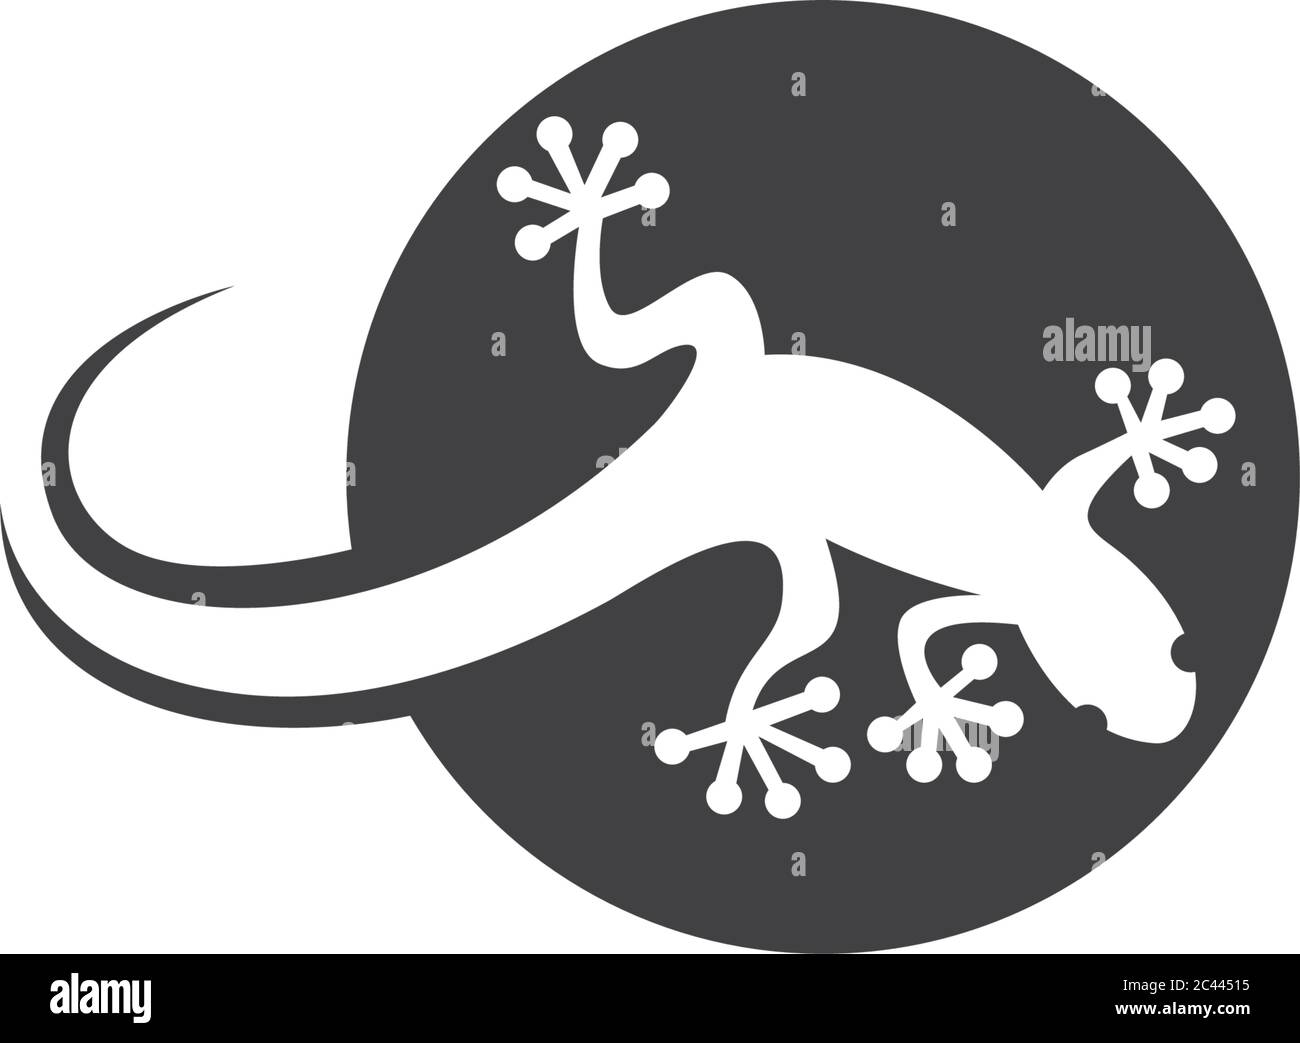 Lizard logo template vector  icon illustration design Stock Vector